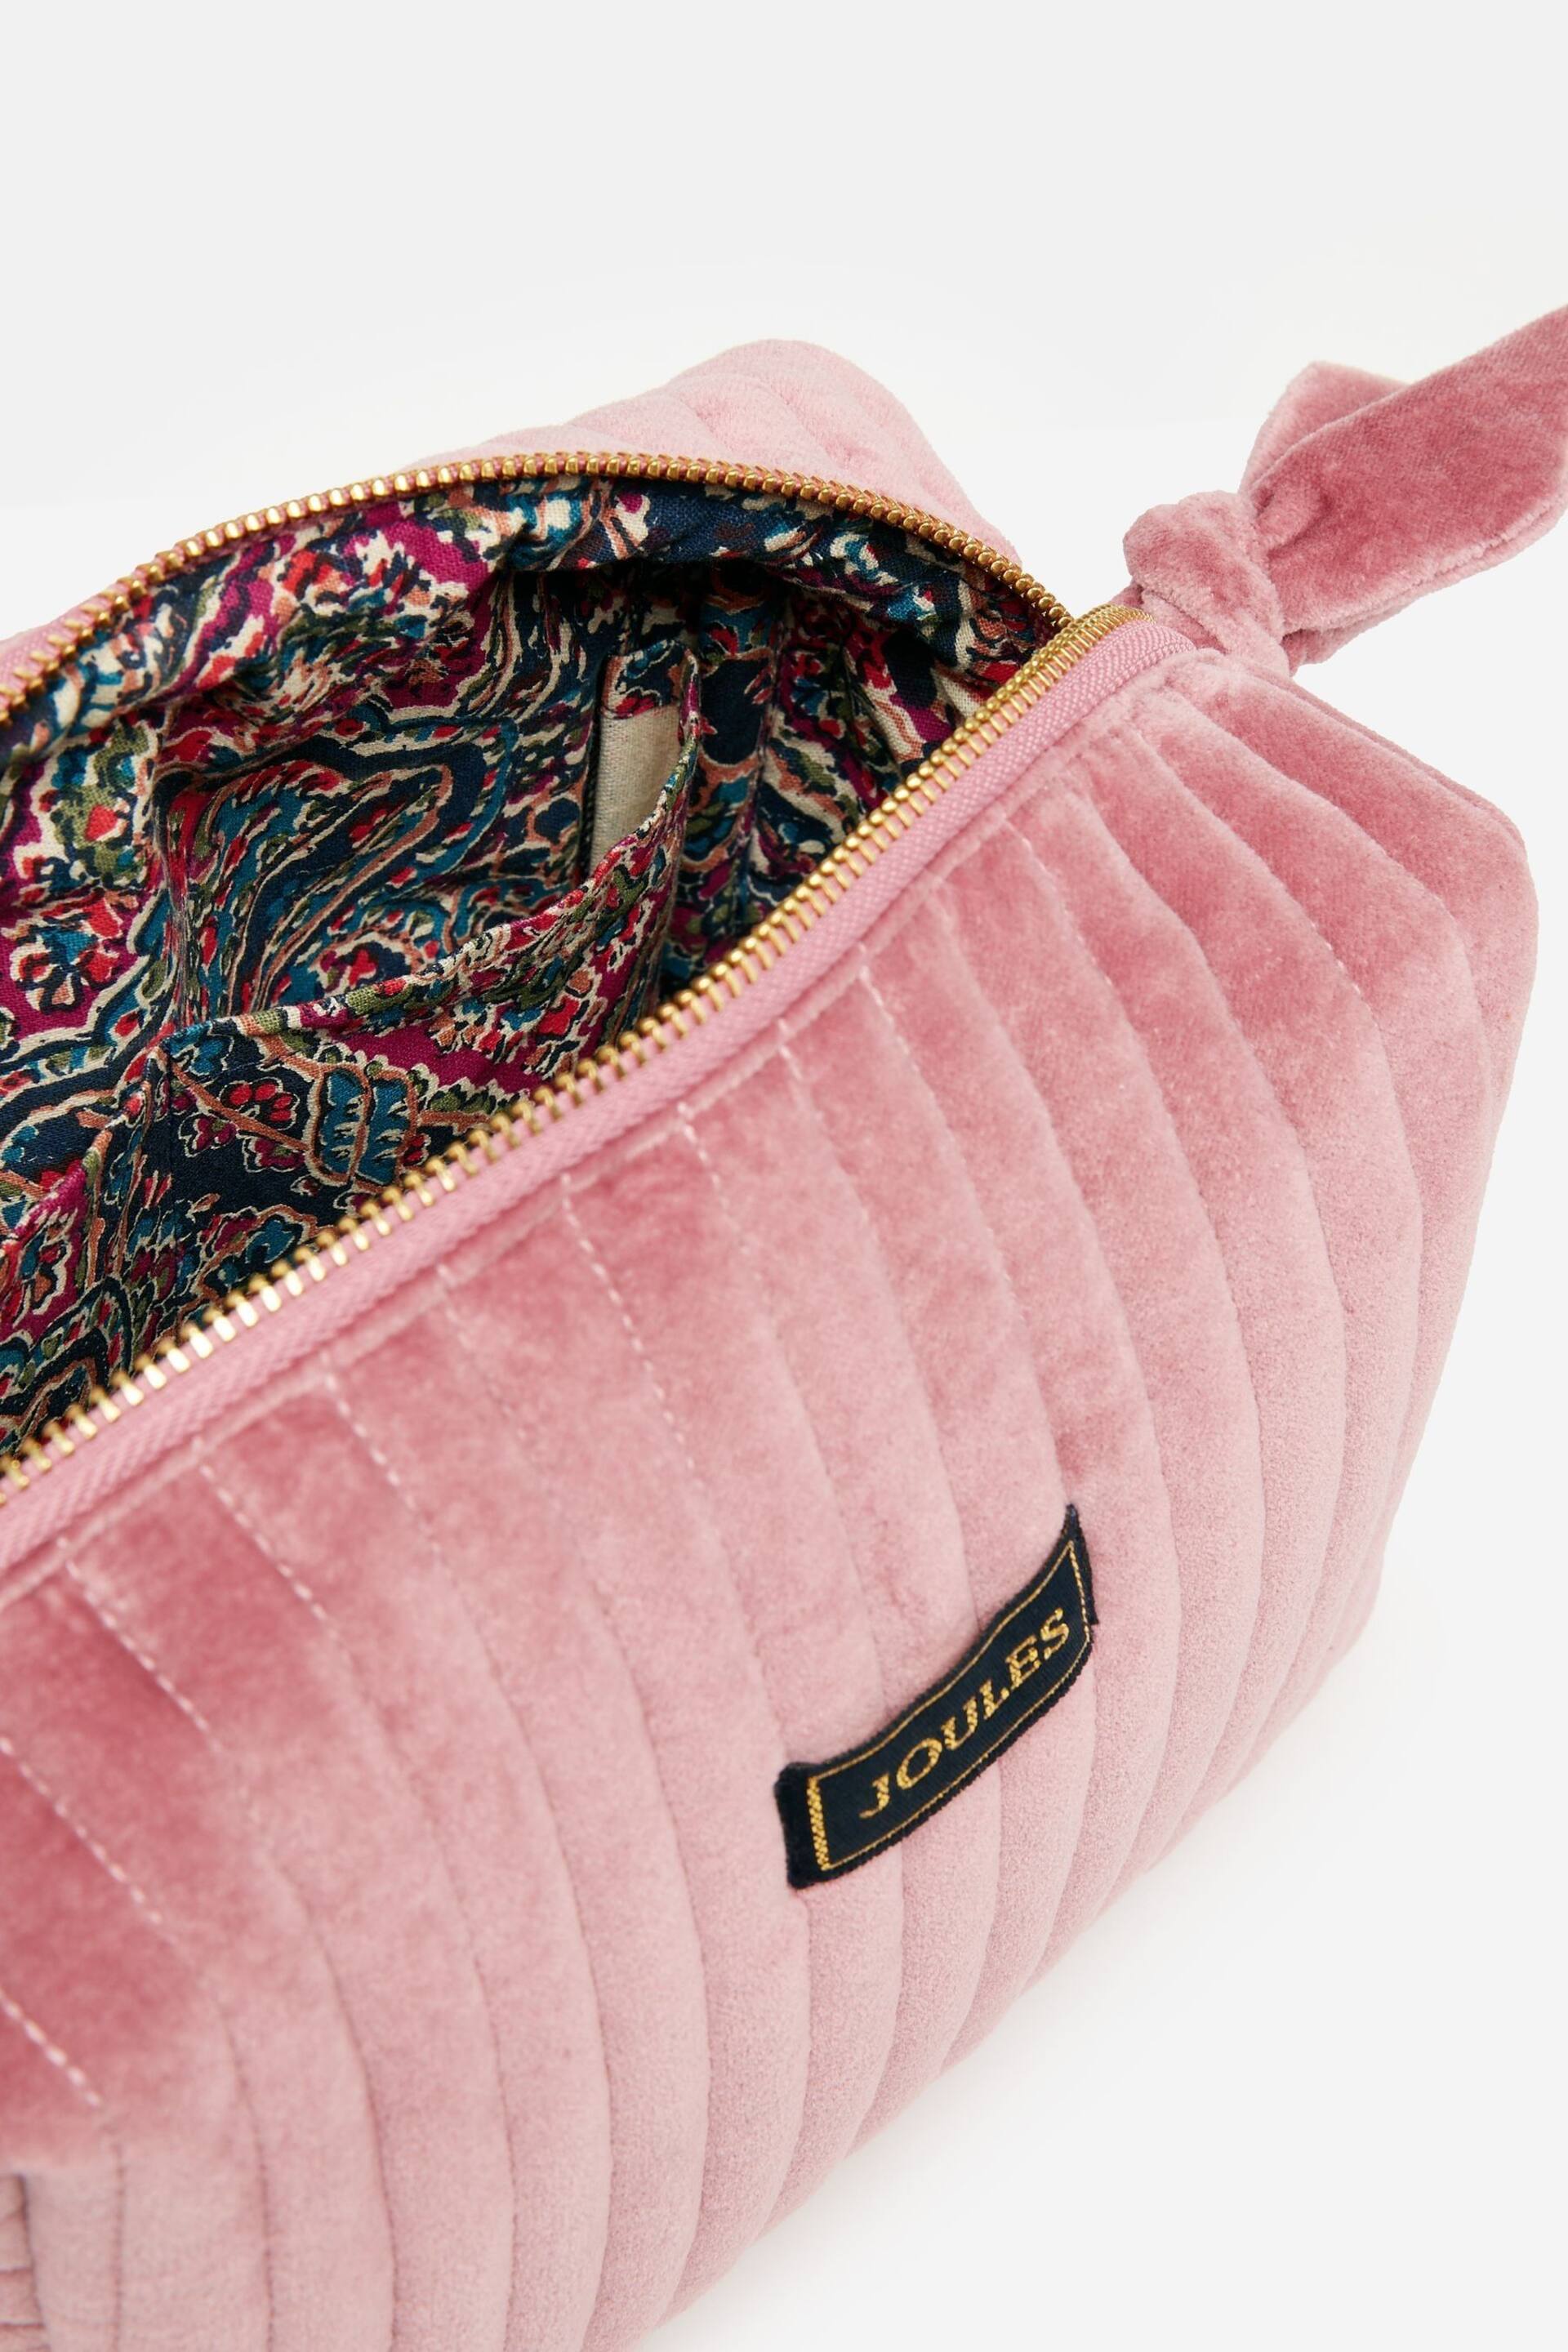 Joules Lillia Rose Pink Velvet Wash Bag - Image 6 of 6